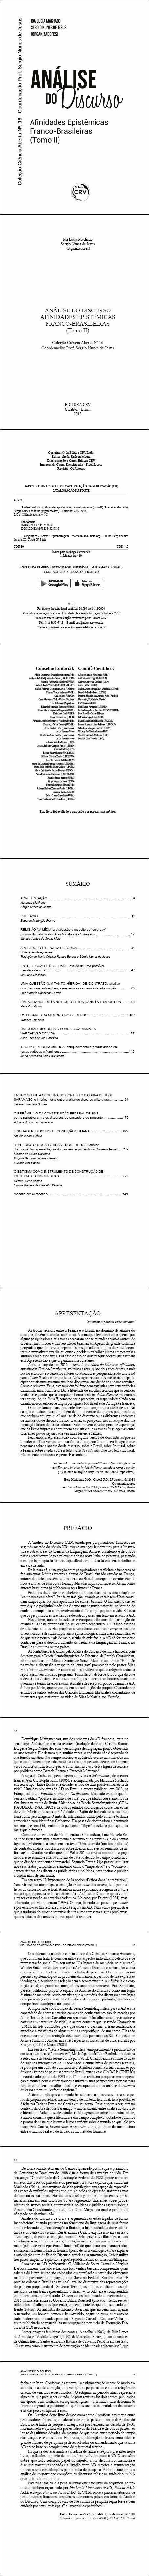 ANÁLISE DO DISCURSO AFINIDADES EPISTÊMICAS FRANCO-BRASILEIRAS (Tomo II) <br>Coleção Ciência Aberta Nº 16 